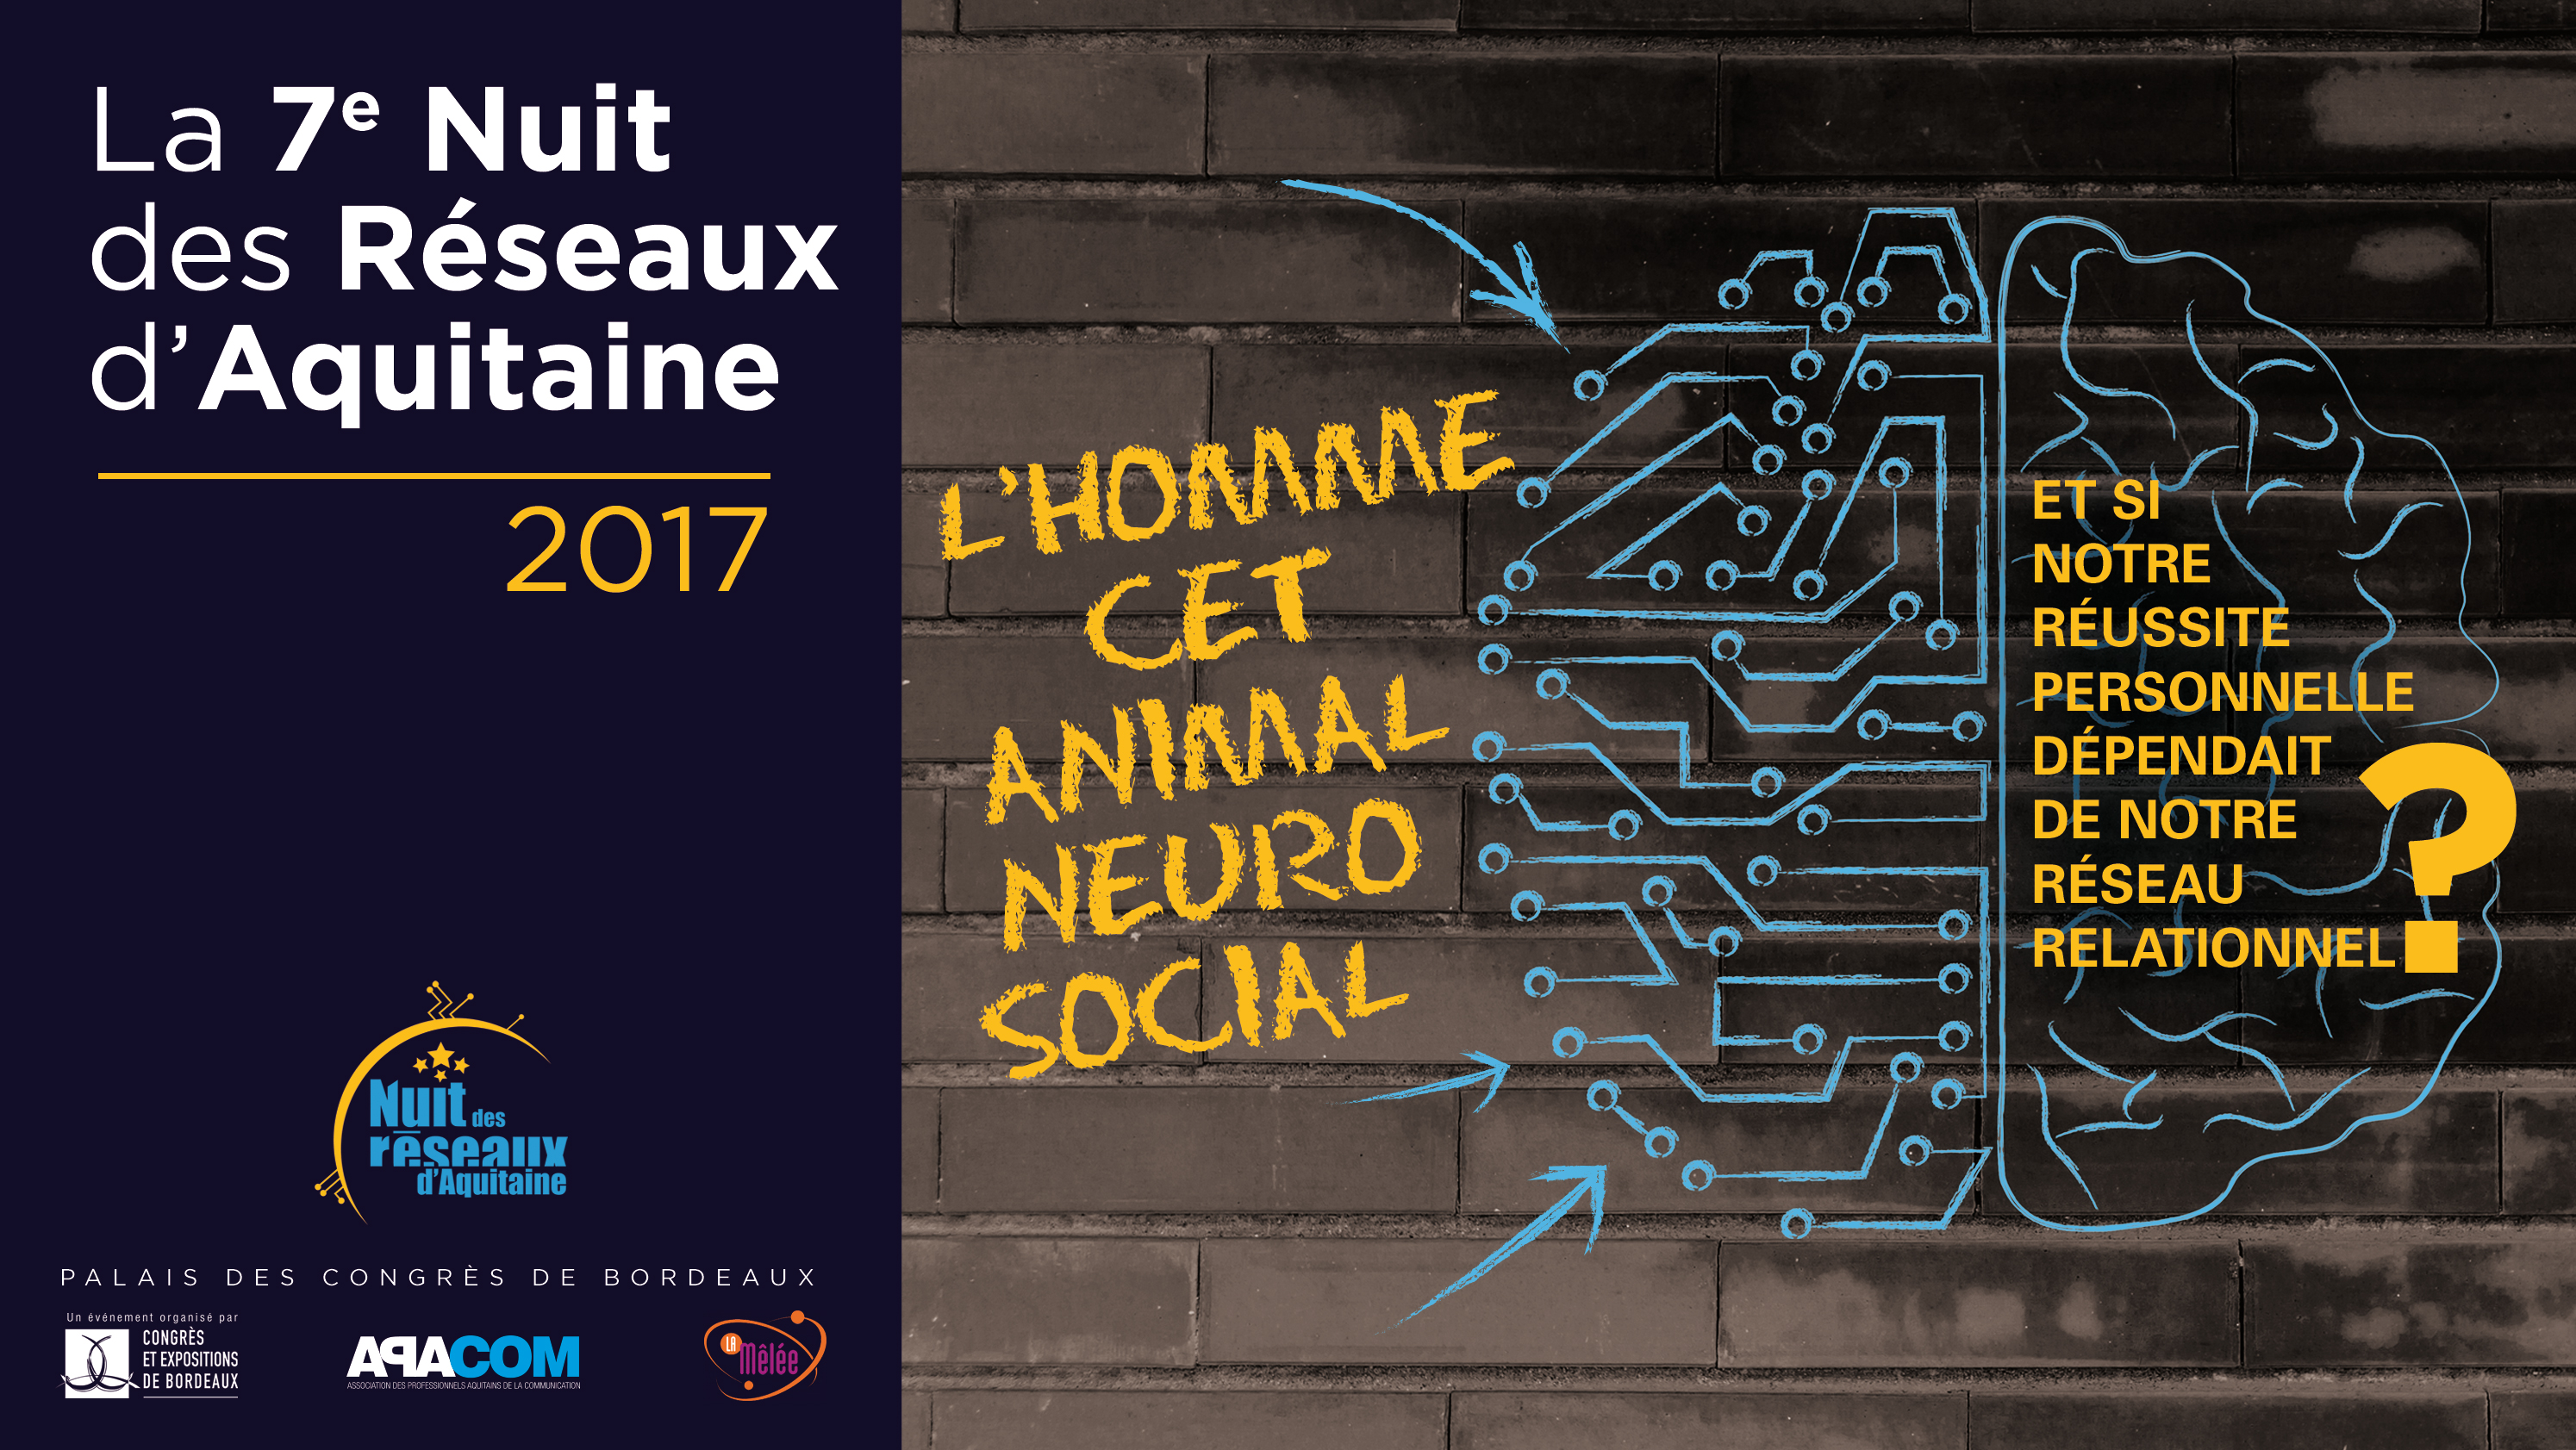 Nuit des Réseaux d'Aquitaine 2017 - L'Homme cet animal neurosocial